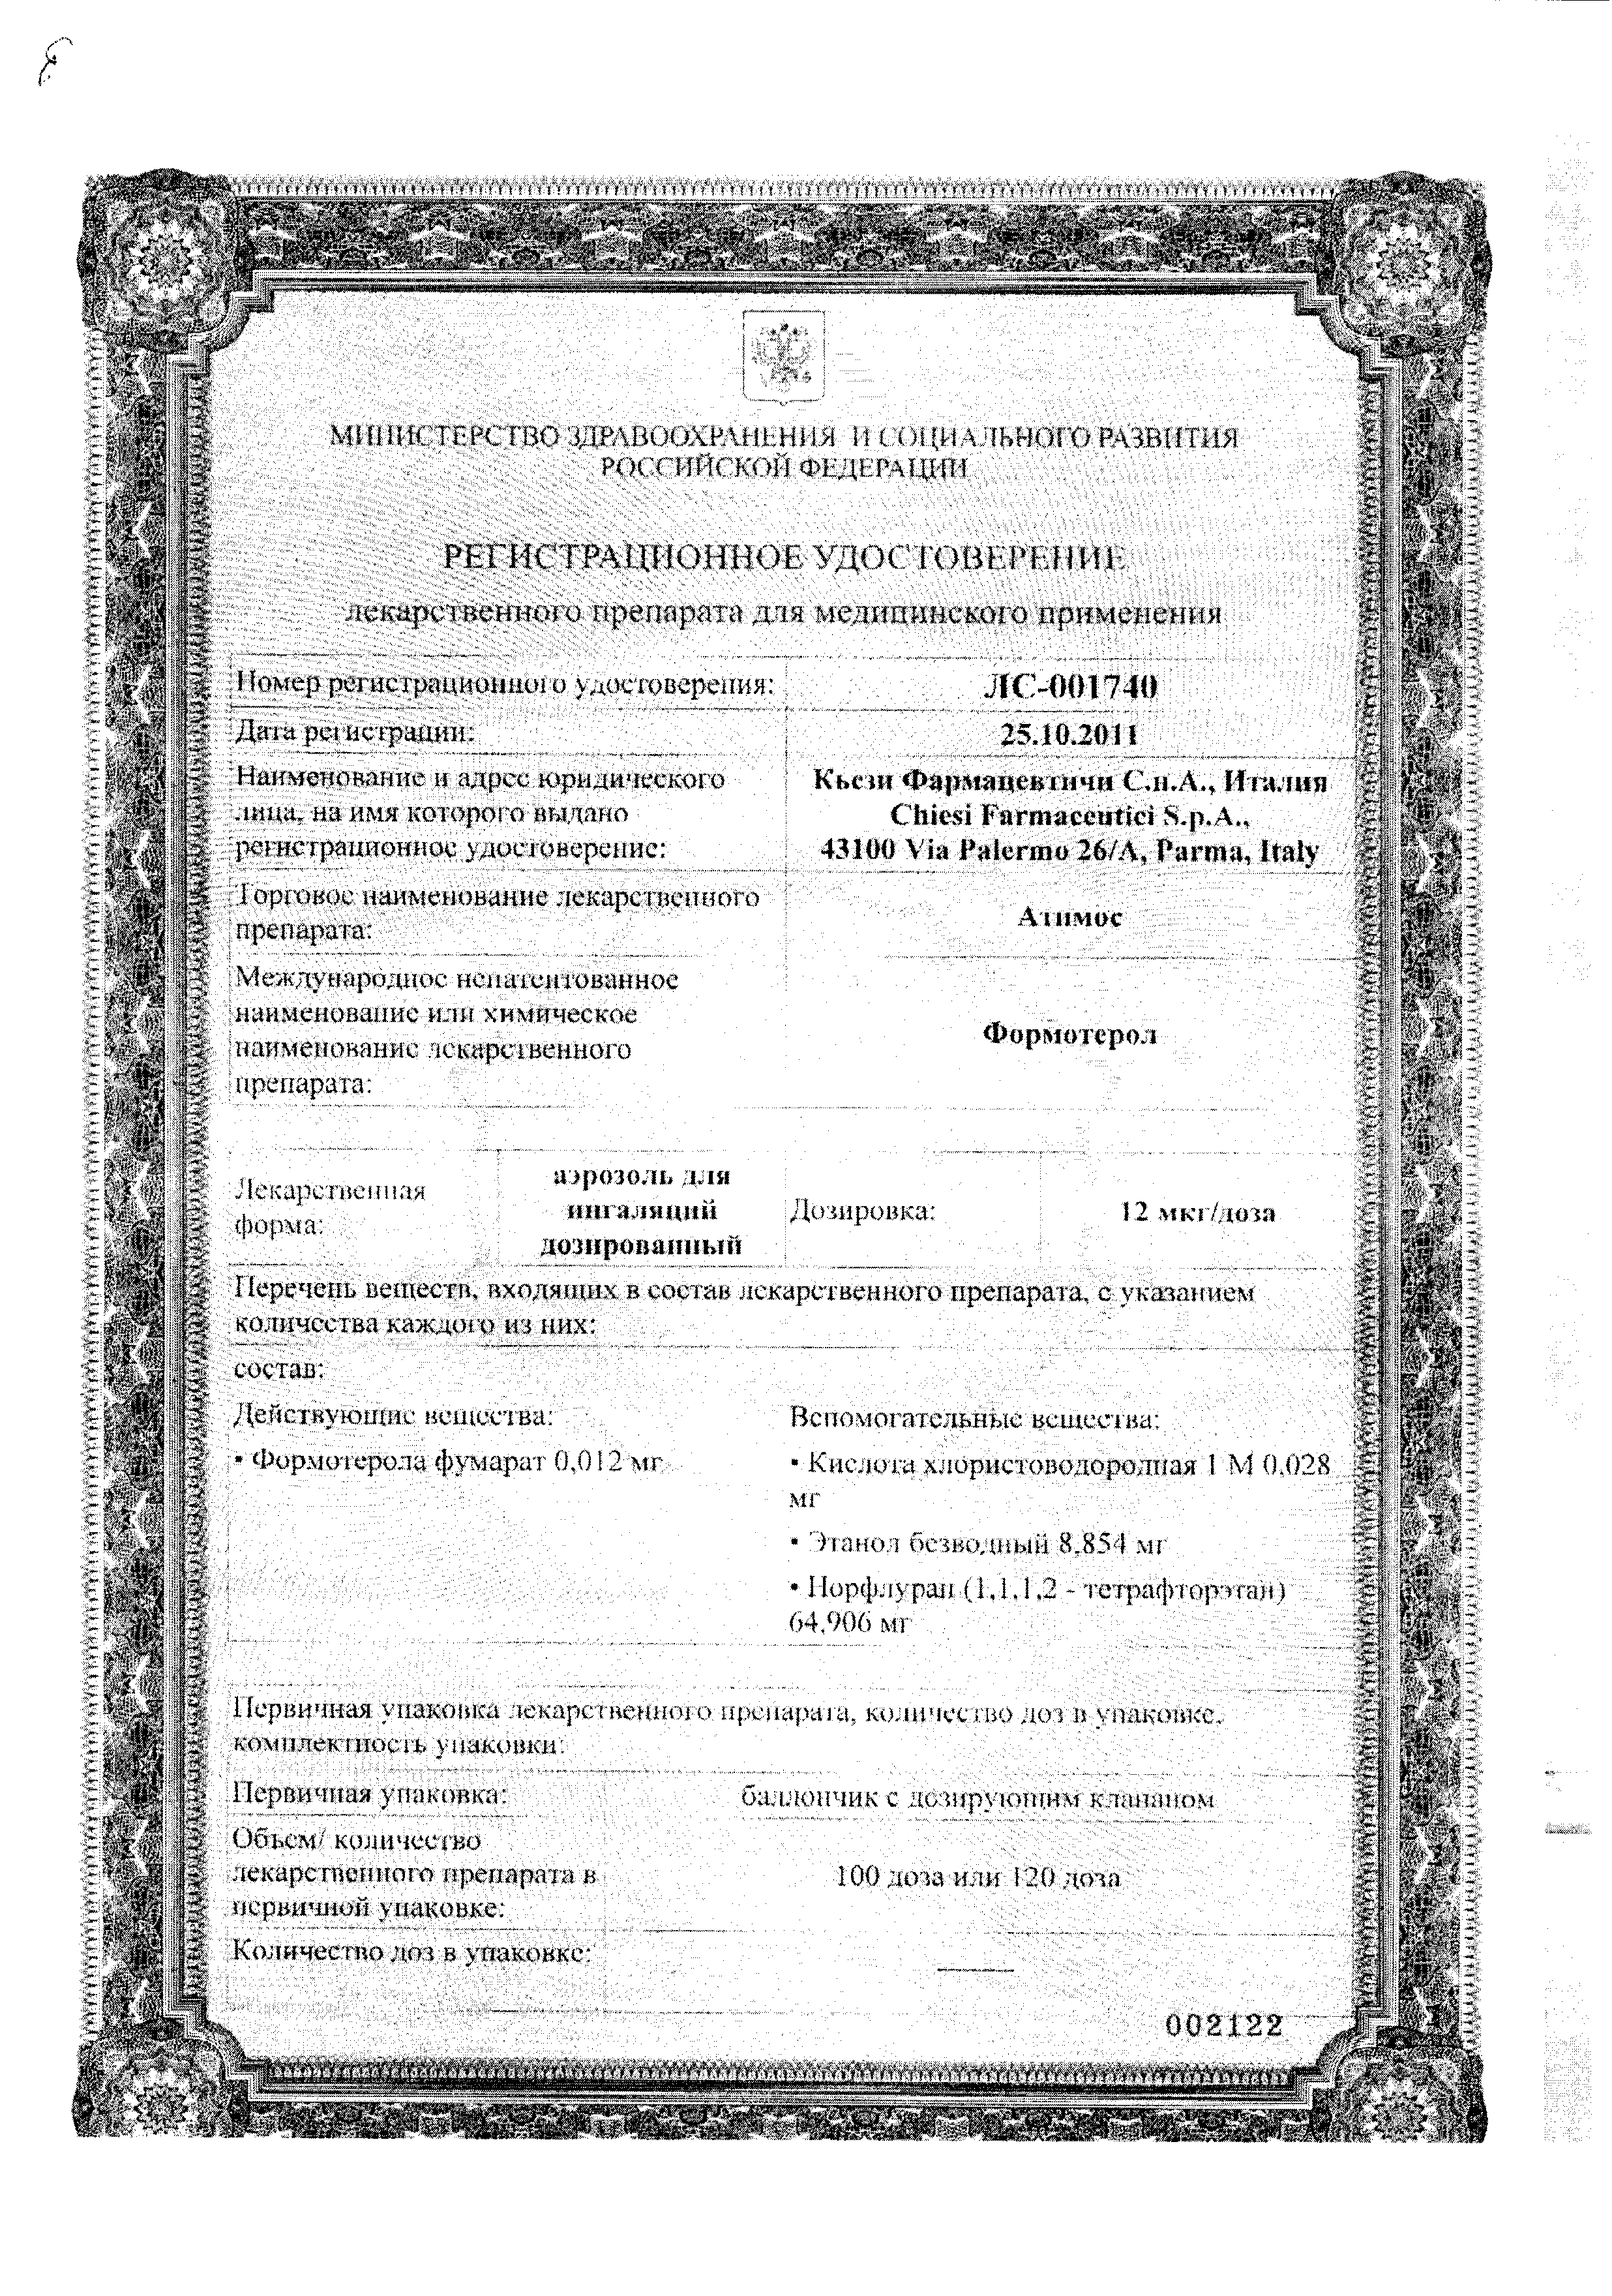 Атимос сертификат